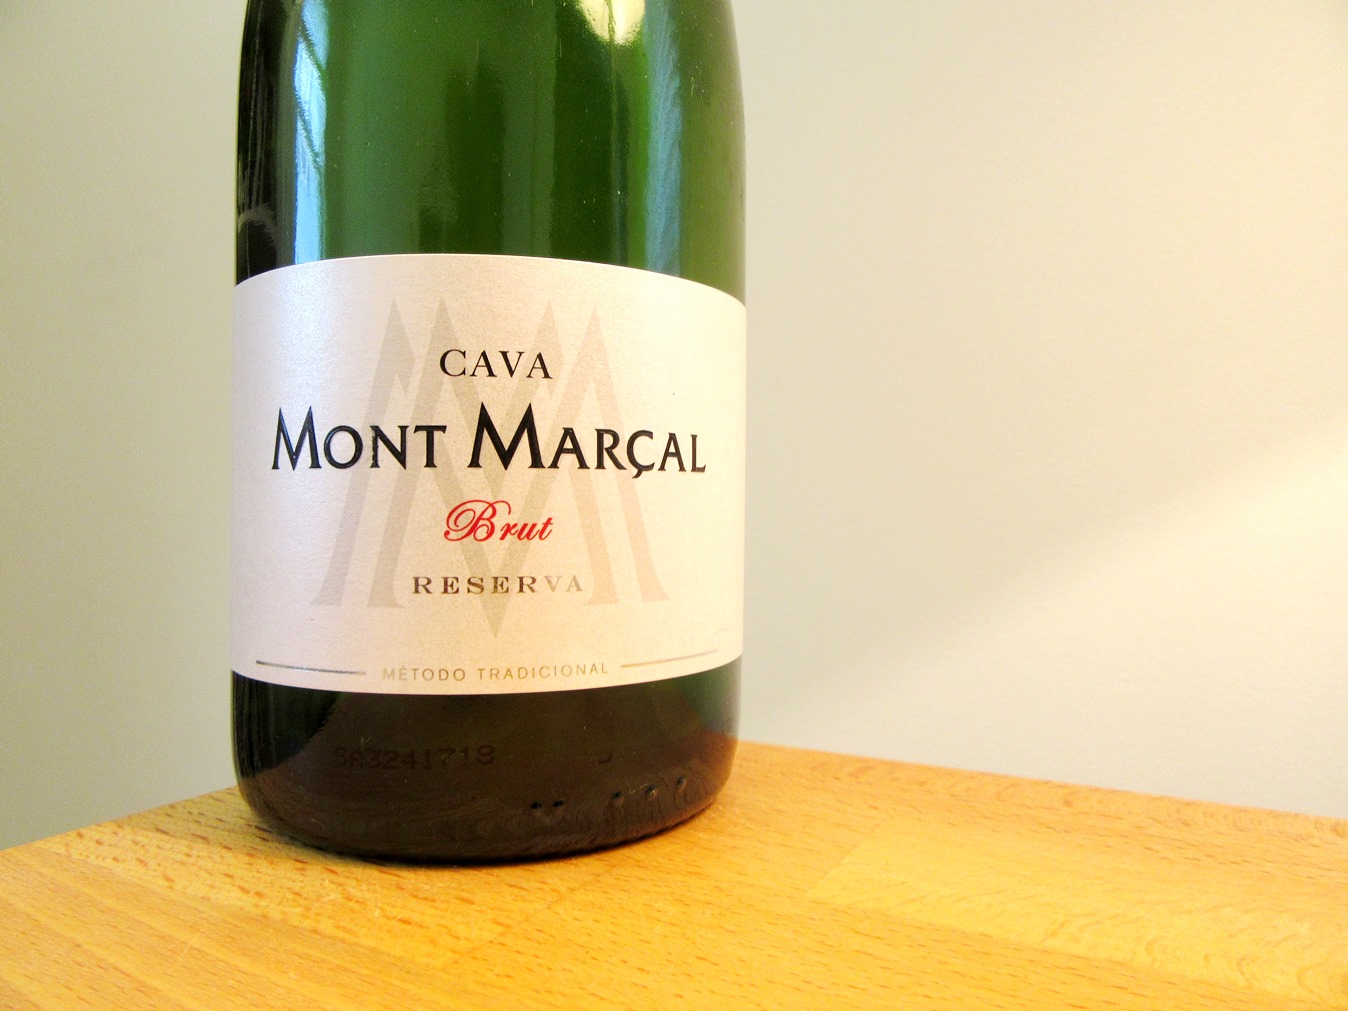 Mont Marcal, Brut Reserva Cava 2015, Catalonia, Spain, Wine Casual